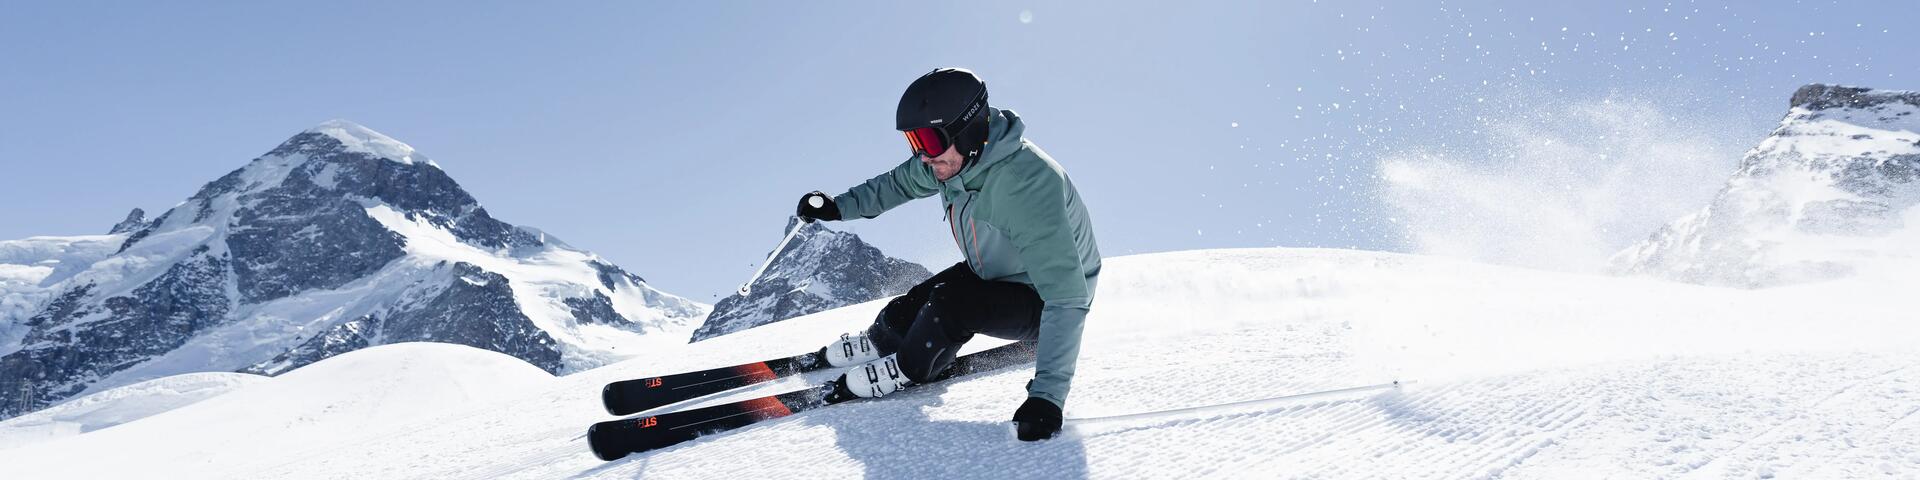 Hoe kan ik parallel skiën? 3 tips om het te leren!